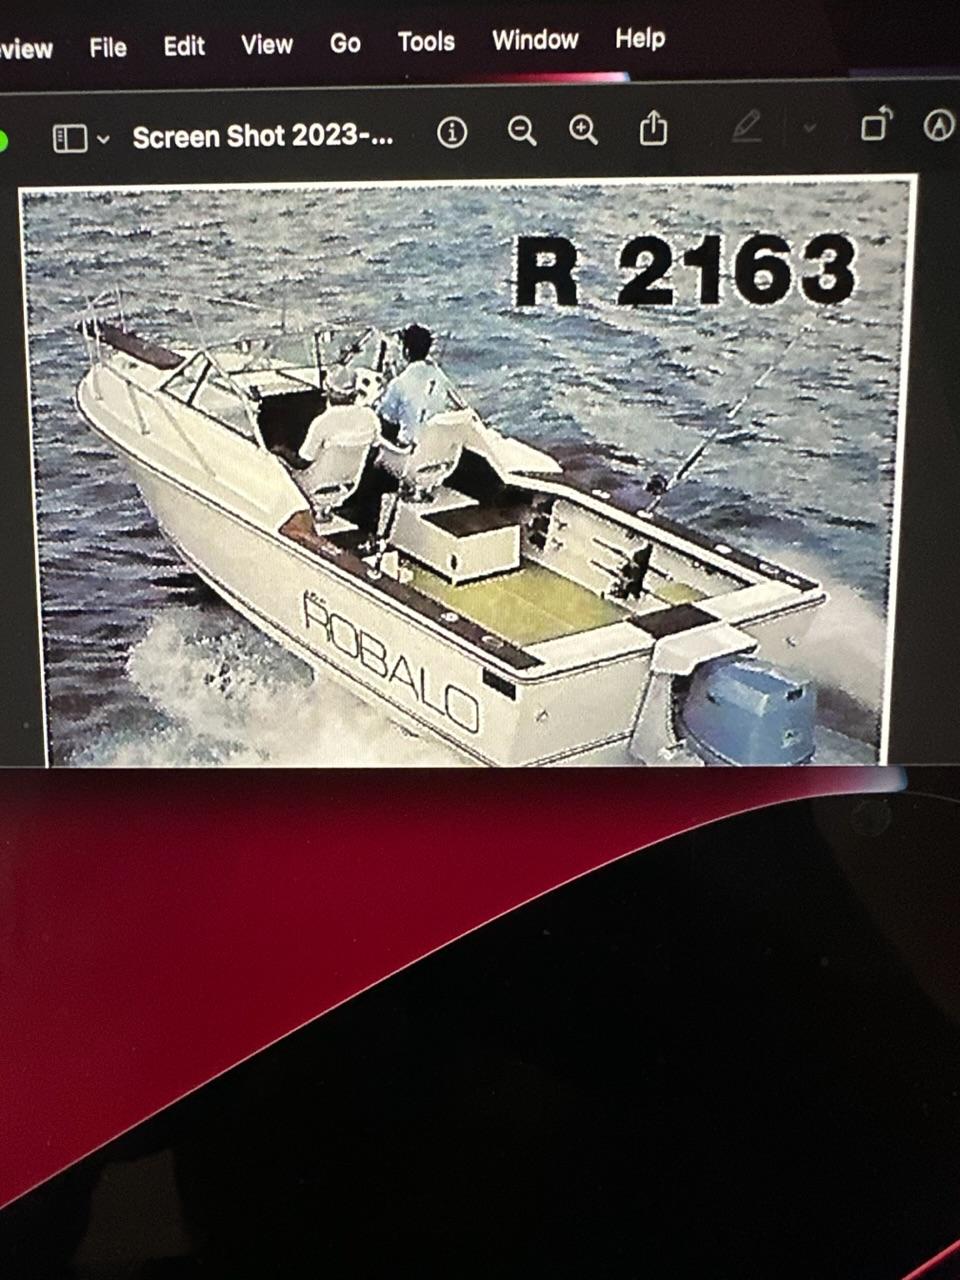 1982 Robalo 2163